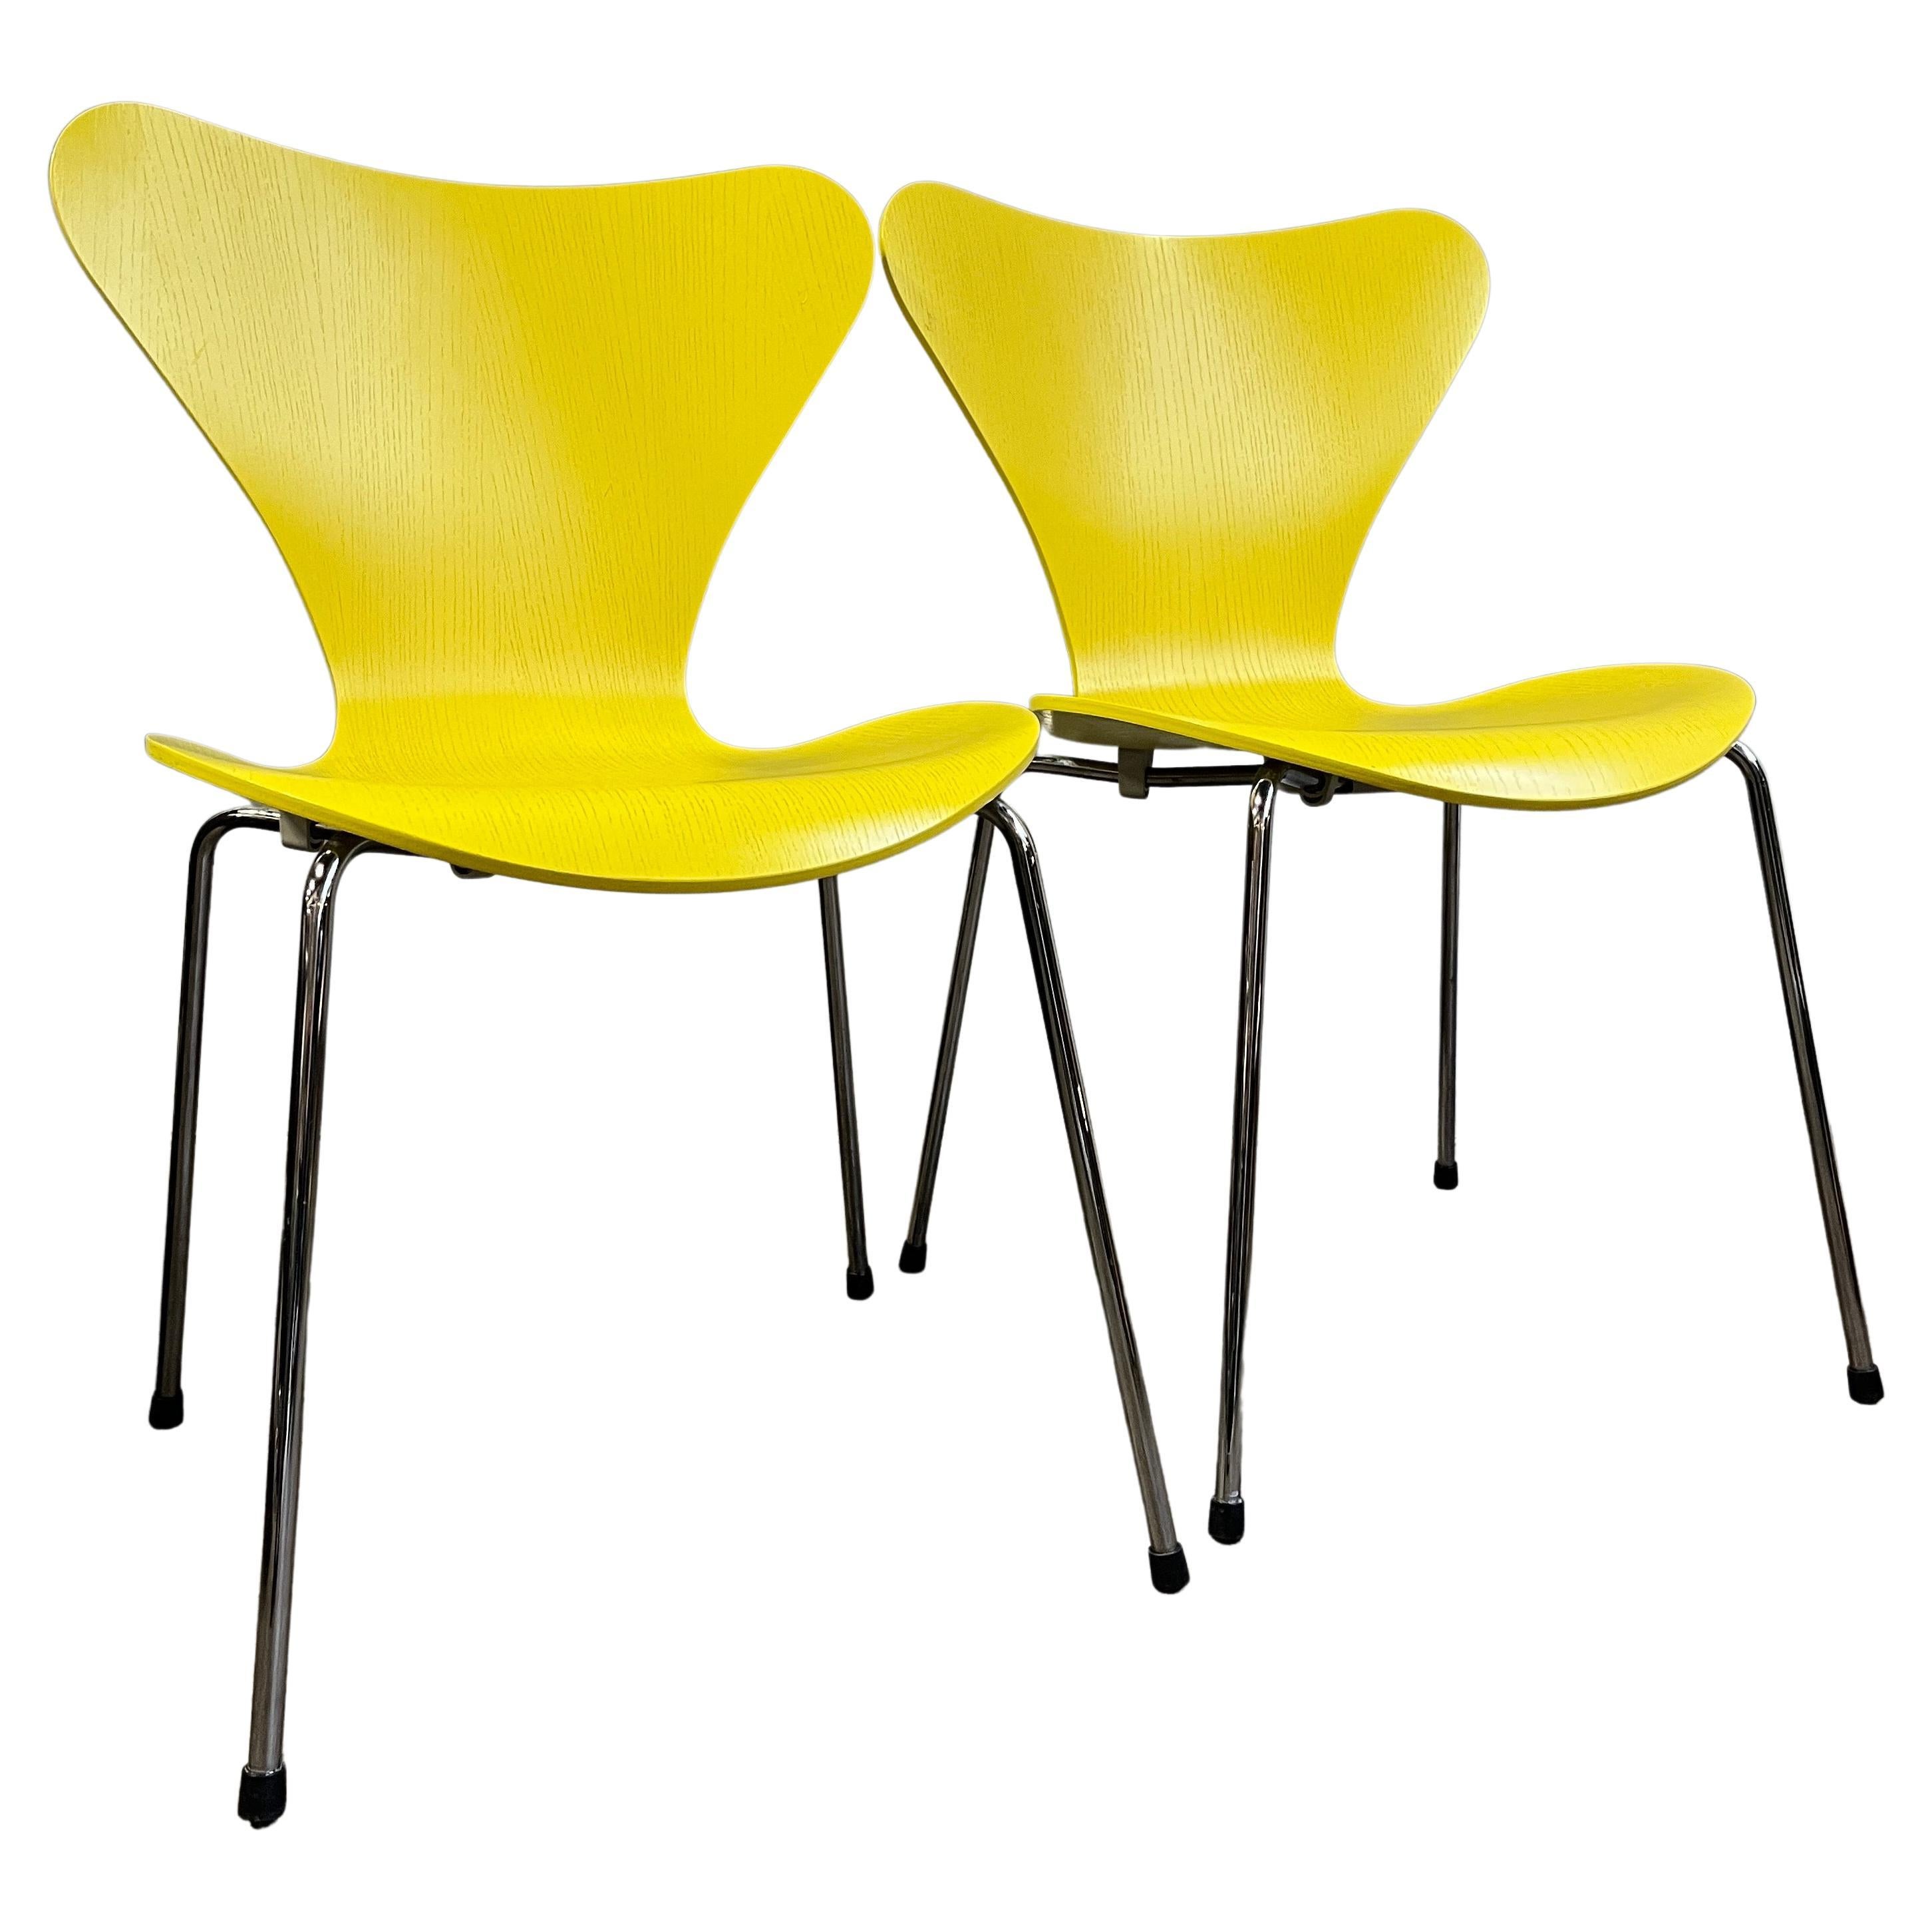 Ein Paar gelbe Stühle der Serie 7 von Arne Jacobsen für Fritz Hansen. Keine wirklichen Abnutzungserscheinungen. Dieses ikonische Design ist einer der erfolgreichsten Stühle, die je aus dieser Ära produziert wurden. Unglaublich bequem und